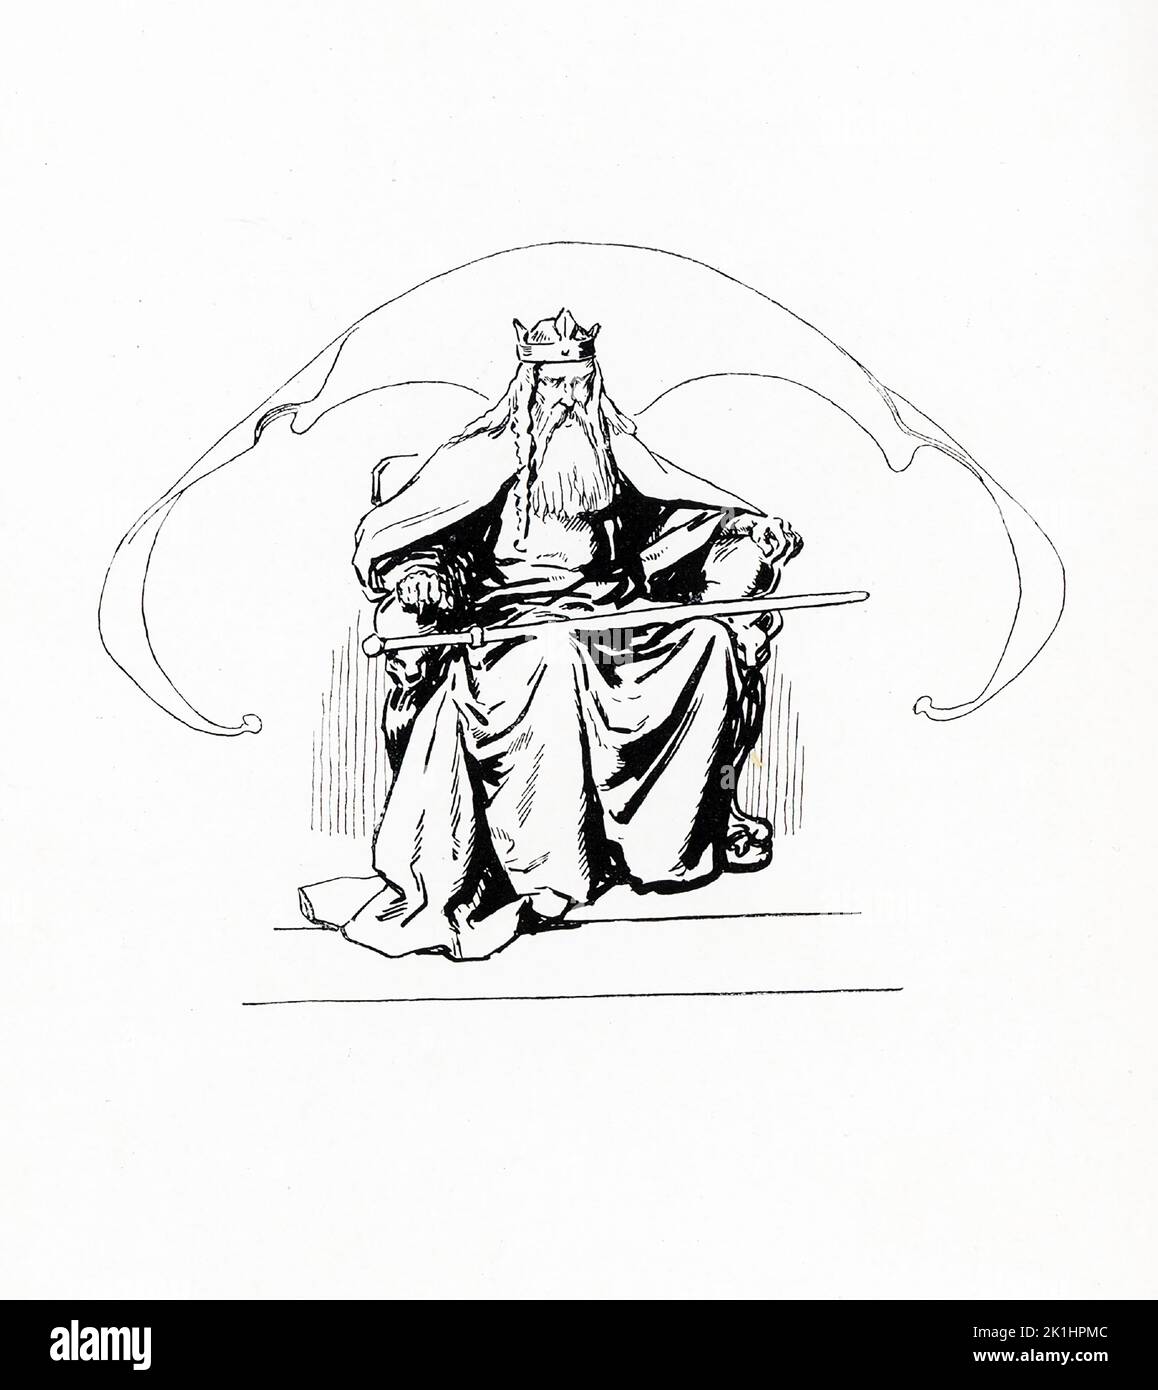 Según la mitología nórdica, Odín era uno de los dioses principales y el gobernante de Asgard (el país o capital de los dioses nórdicos). Esta ilustración de Gordon Browne data de 1913. Foto de stock